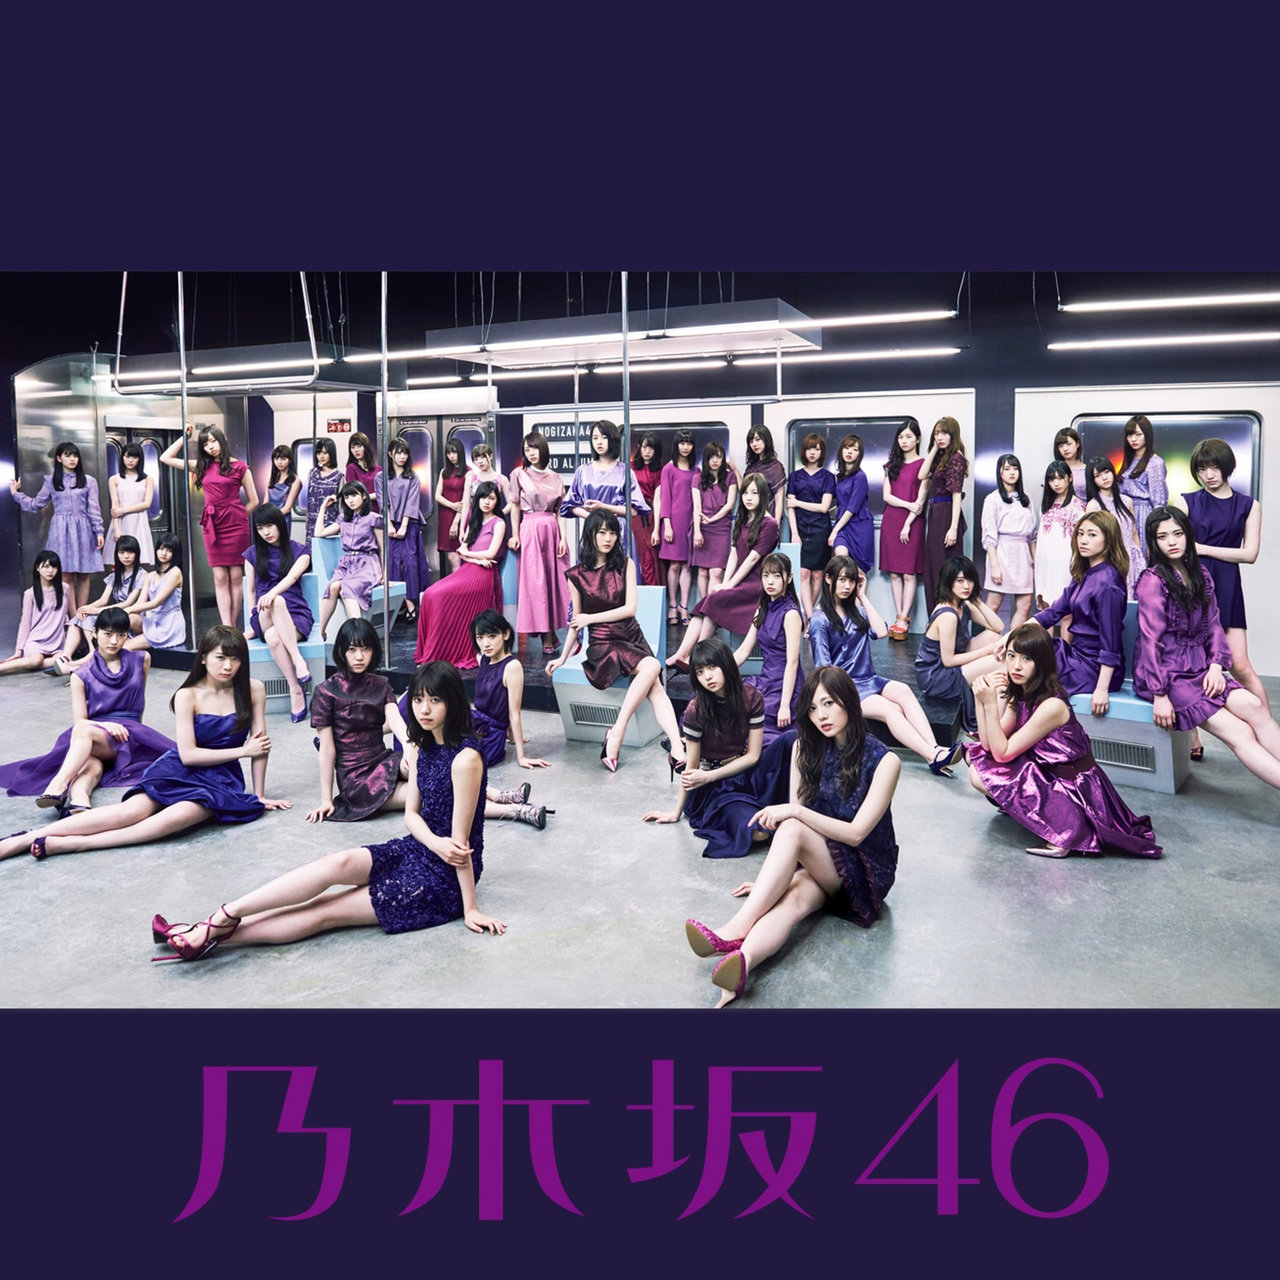 Nogizaka46 Umarete kara Hajimete Mita Yume cover artwork